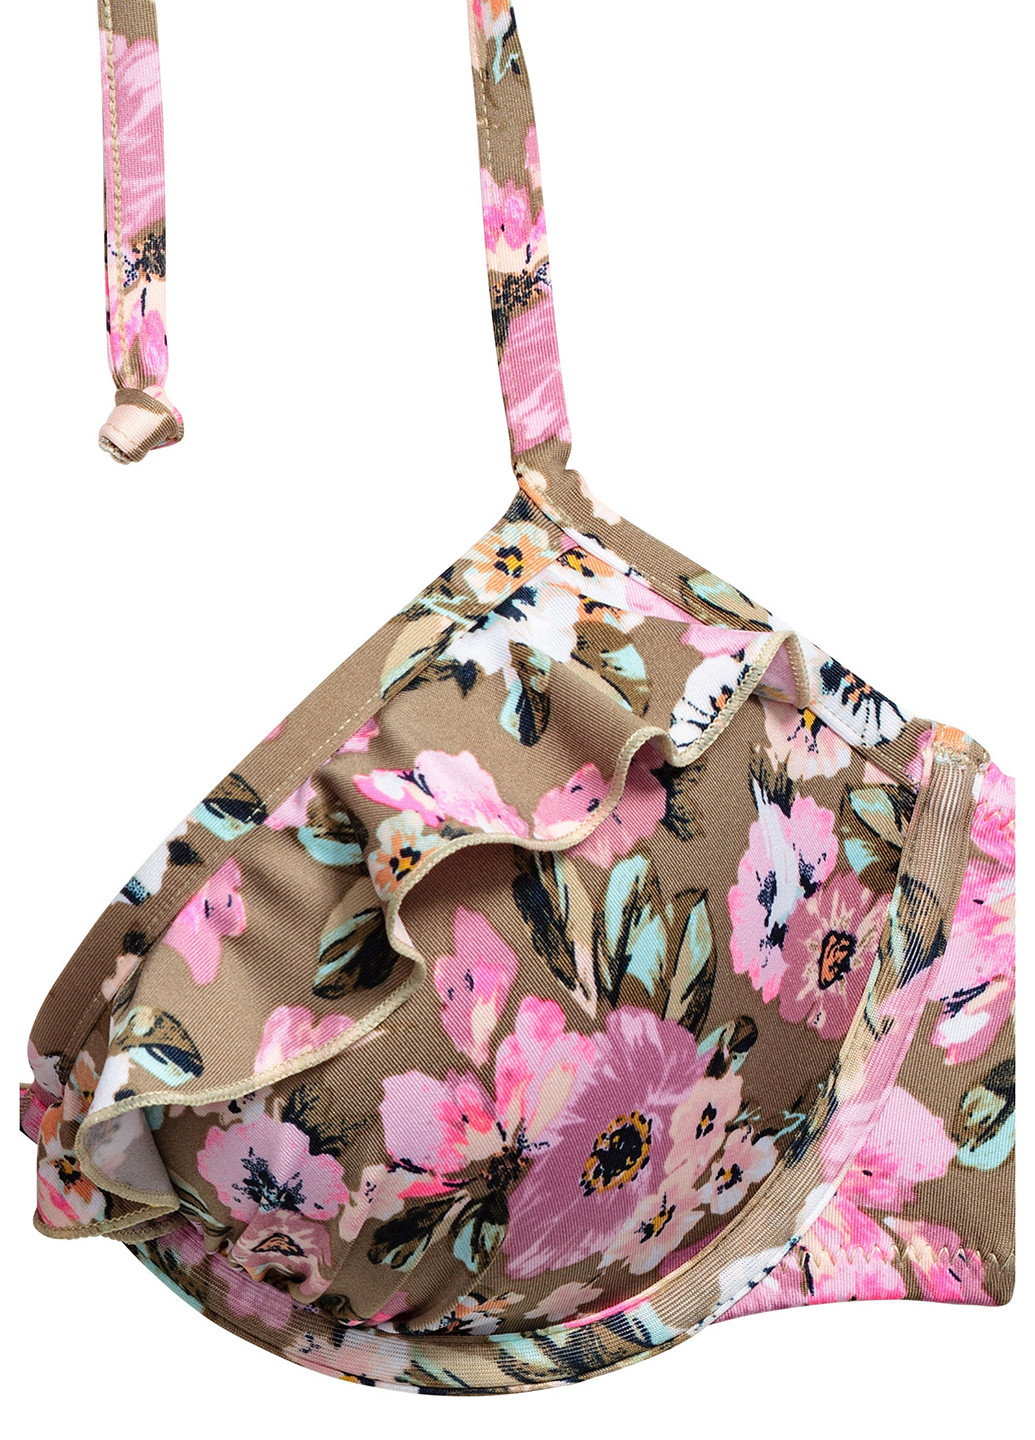 Купальный лиф H&M бикини цветочный комбинированный пляжный полиамид, трикотаж